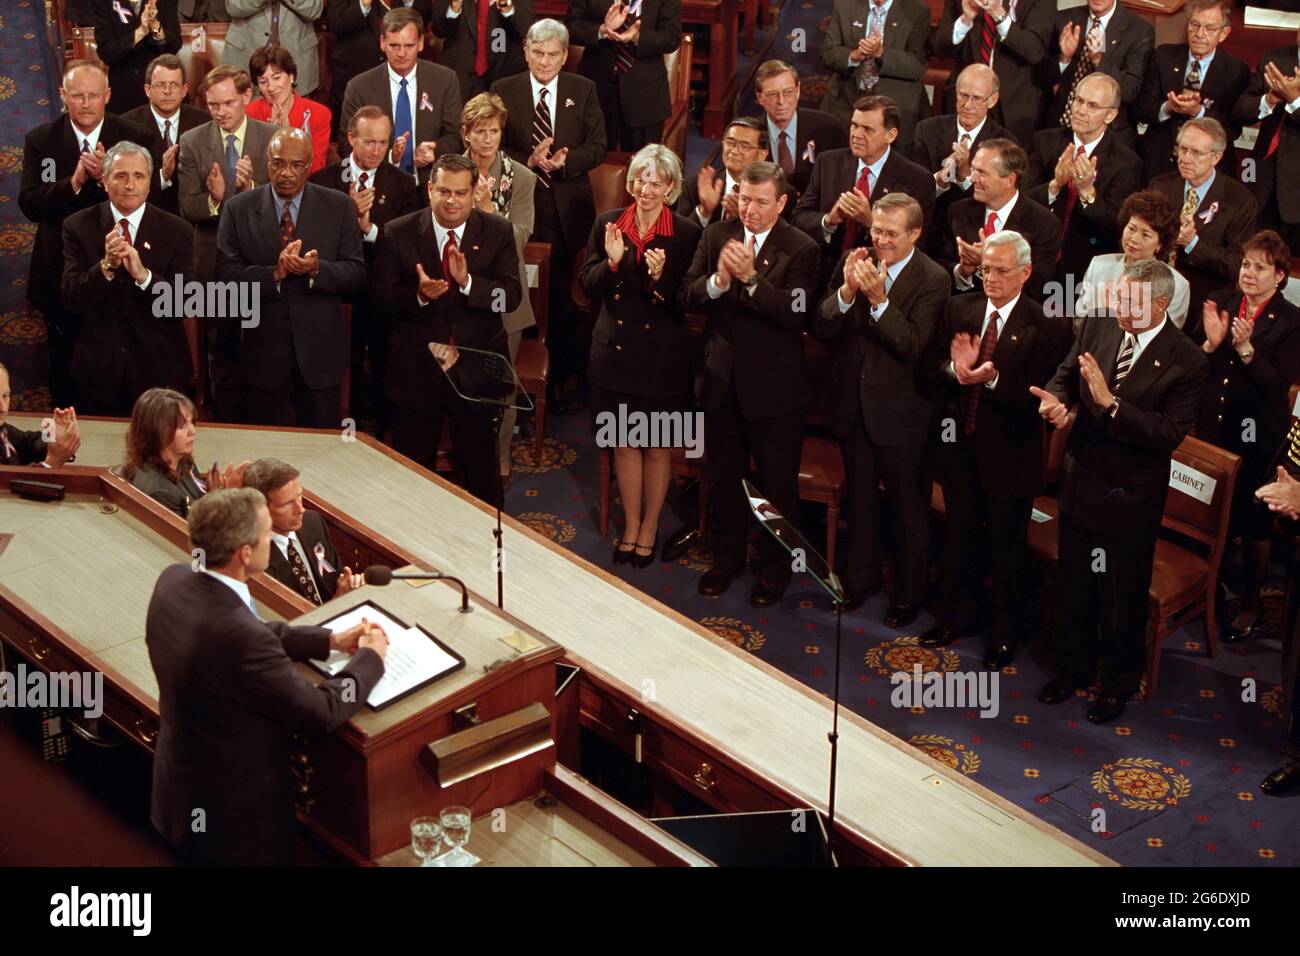 Le président George W. Bush prononce une allocution au sujet des attaques terroristes du 11 septembre contre les États-Unis lors d'une session conjointe du Congrès, le jeudi 20 septembre 2001, au Capitole des États-Unis. Photo de Paul Morse, gracieuseté de la bibliothèque présidentielle George W. Bush Banque D'Images